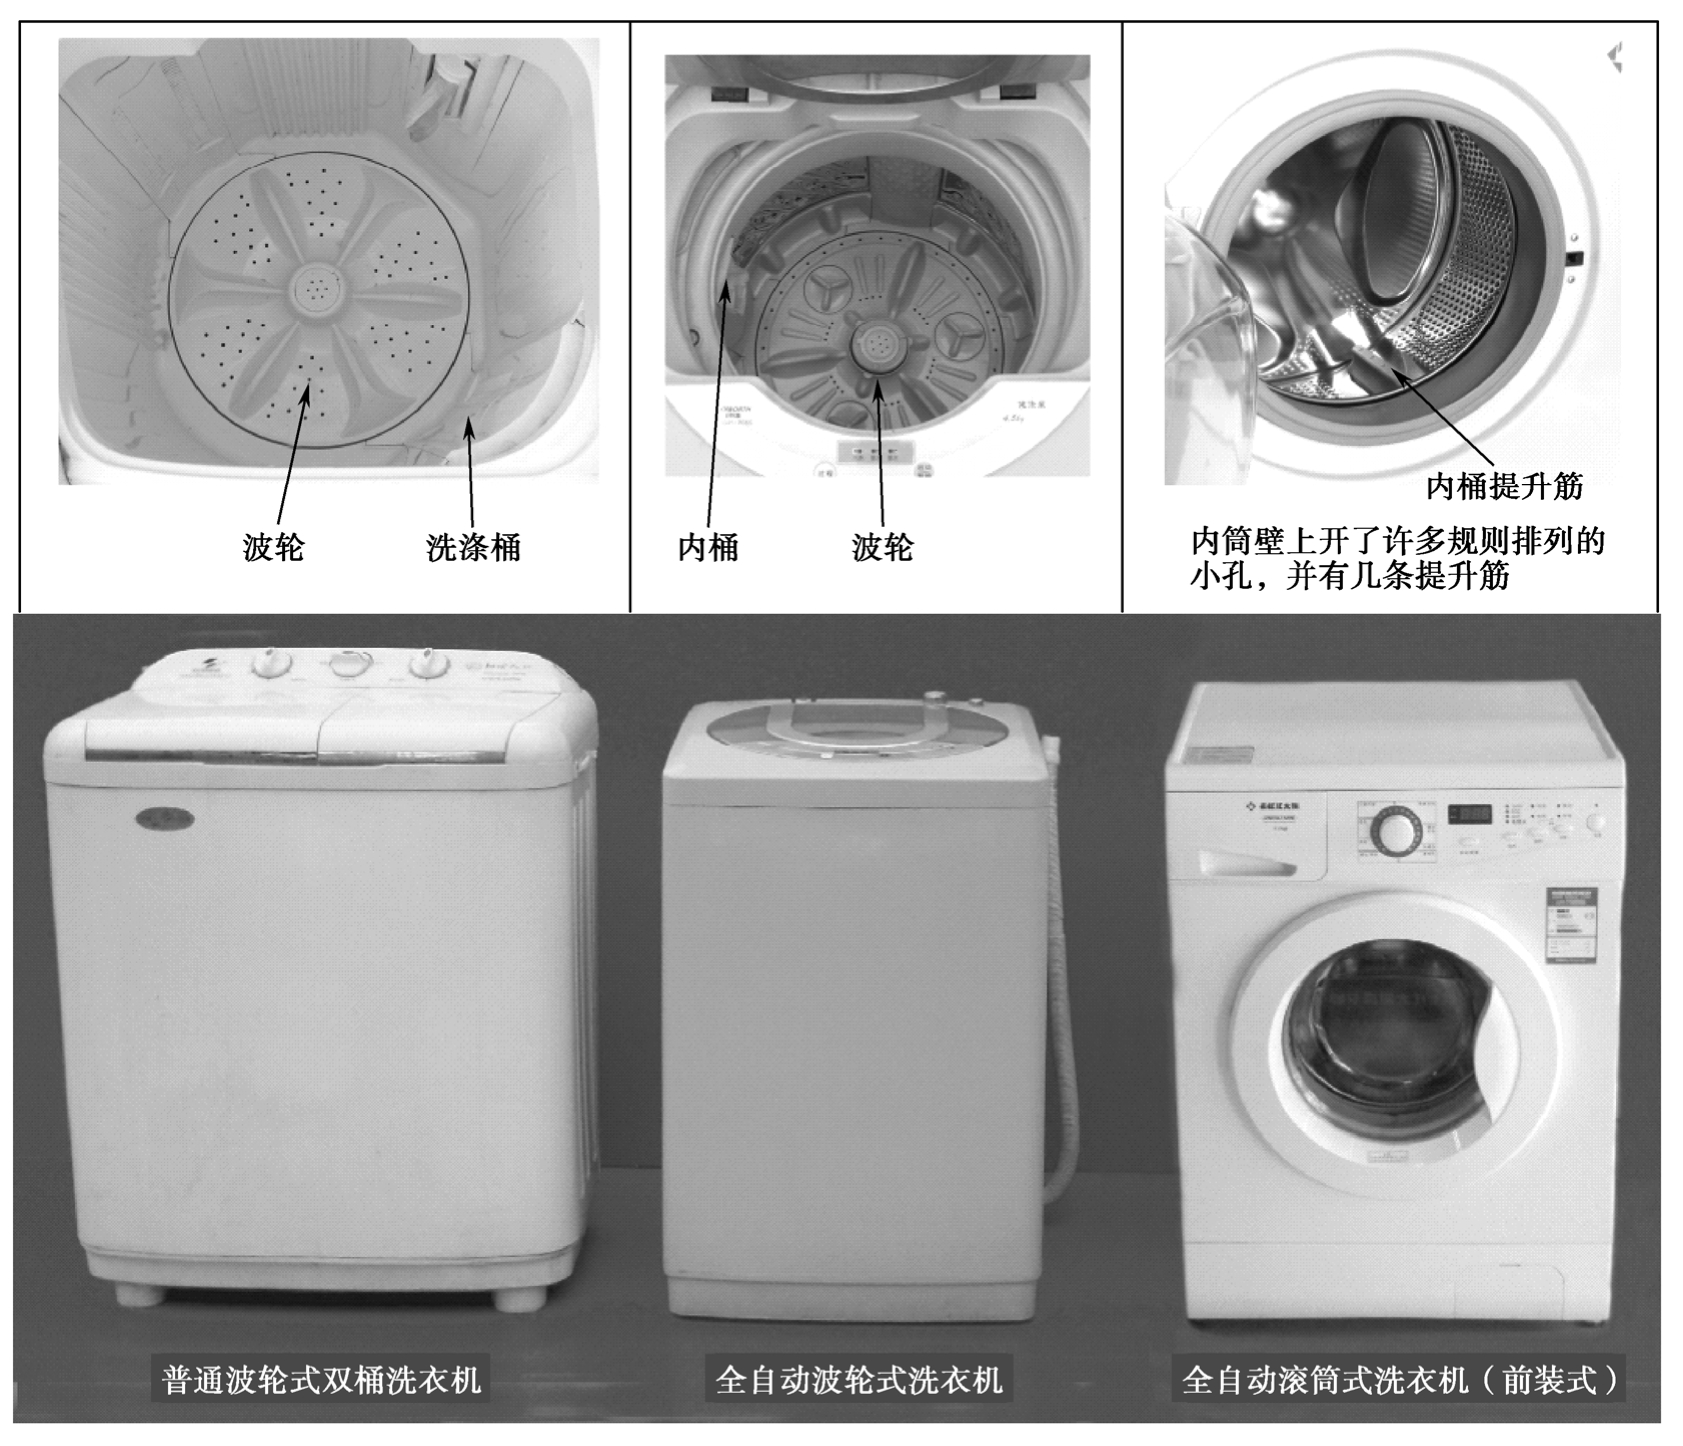 新型洗衣机故障分析与维修项目教程pdf/doc/txt格式电子书下载